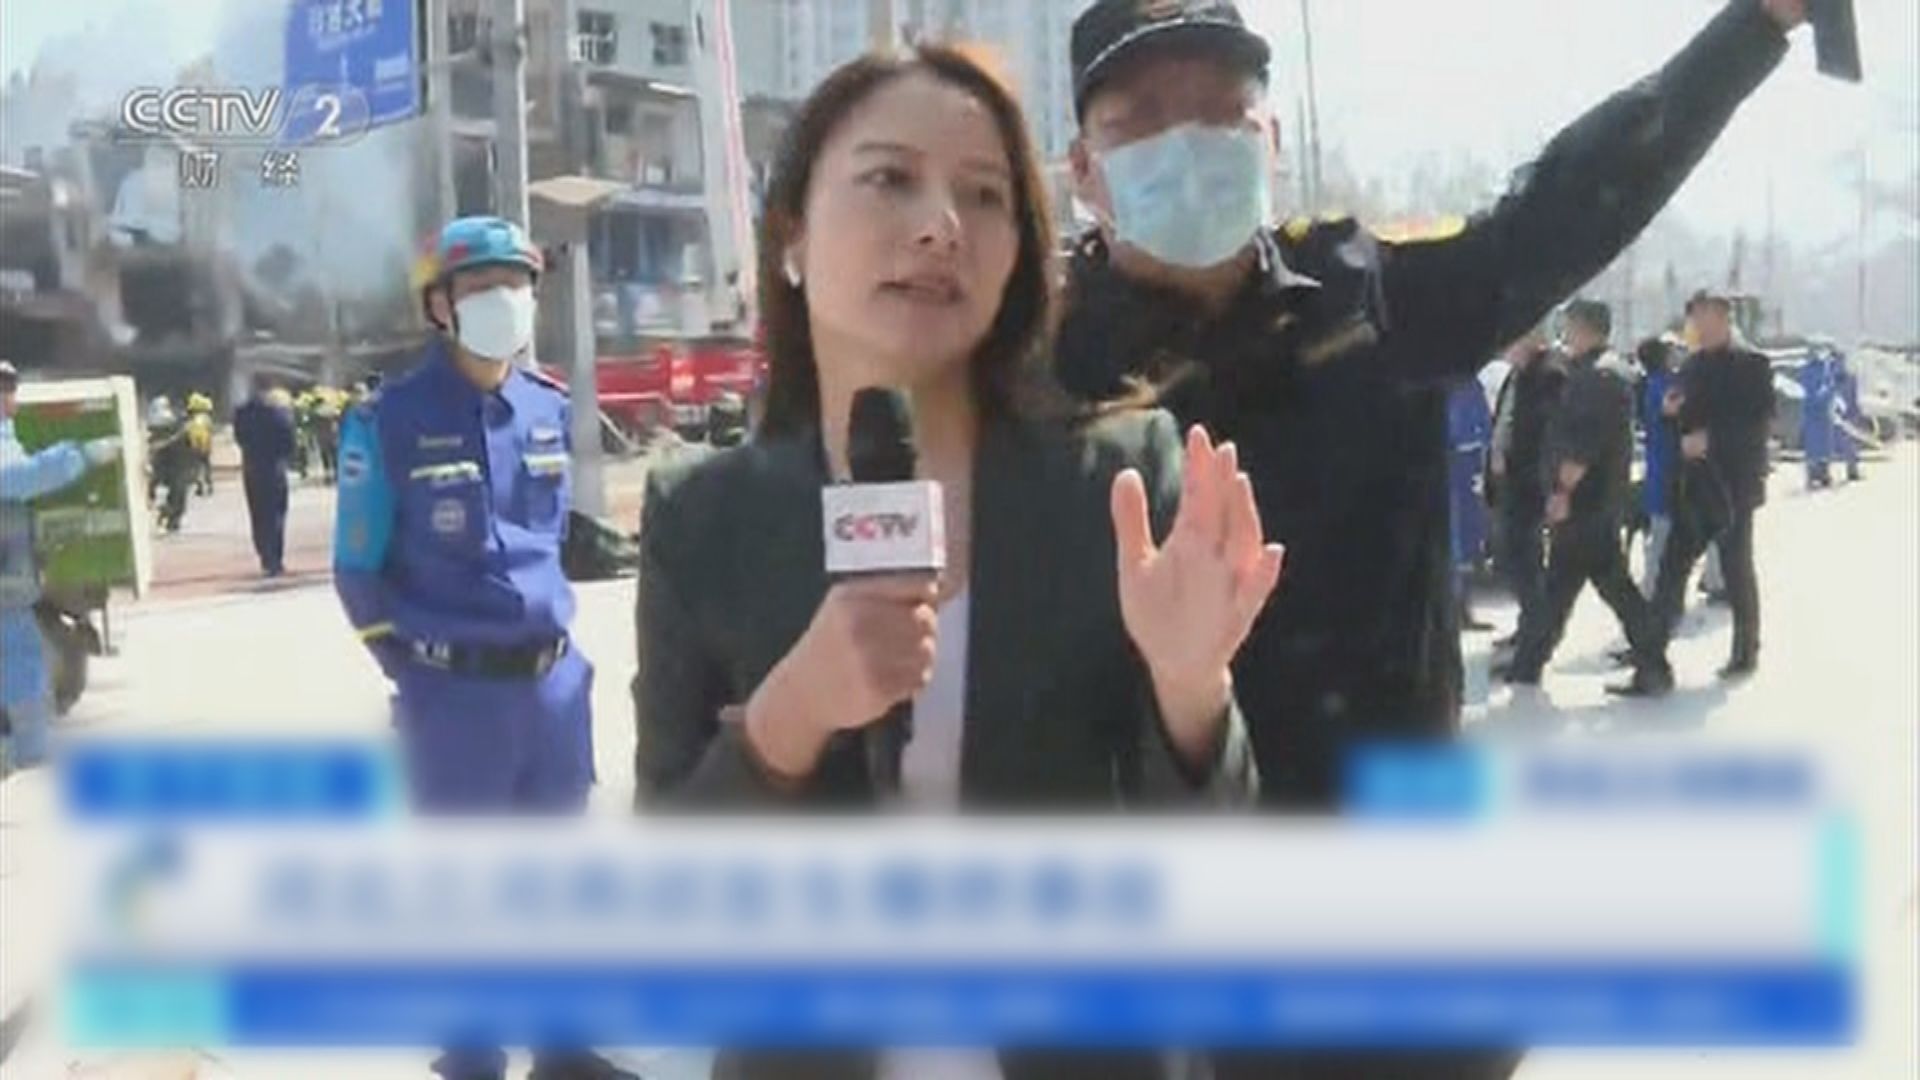 央視記者河北爆炸現場直播時被阻 中國記協及胡錫進齊聲批評